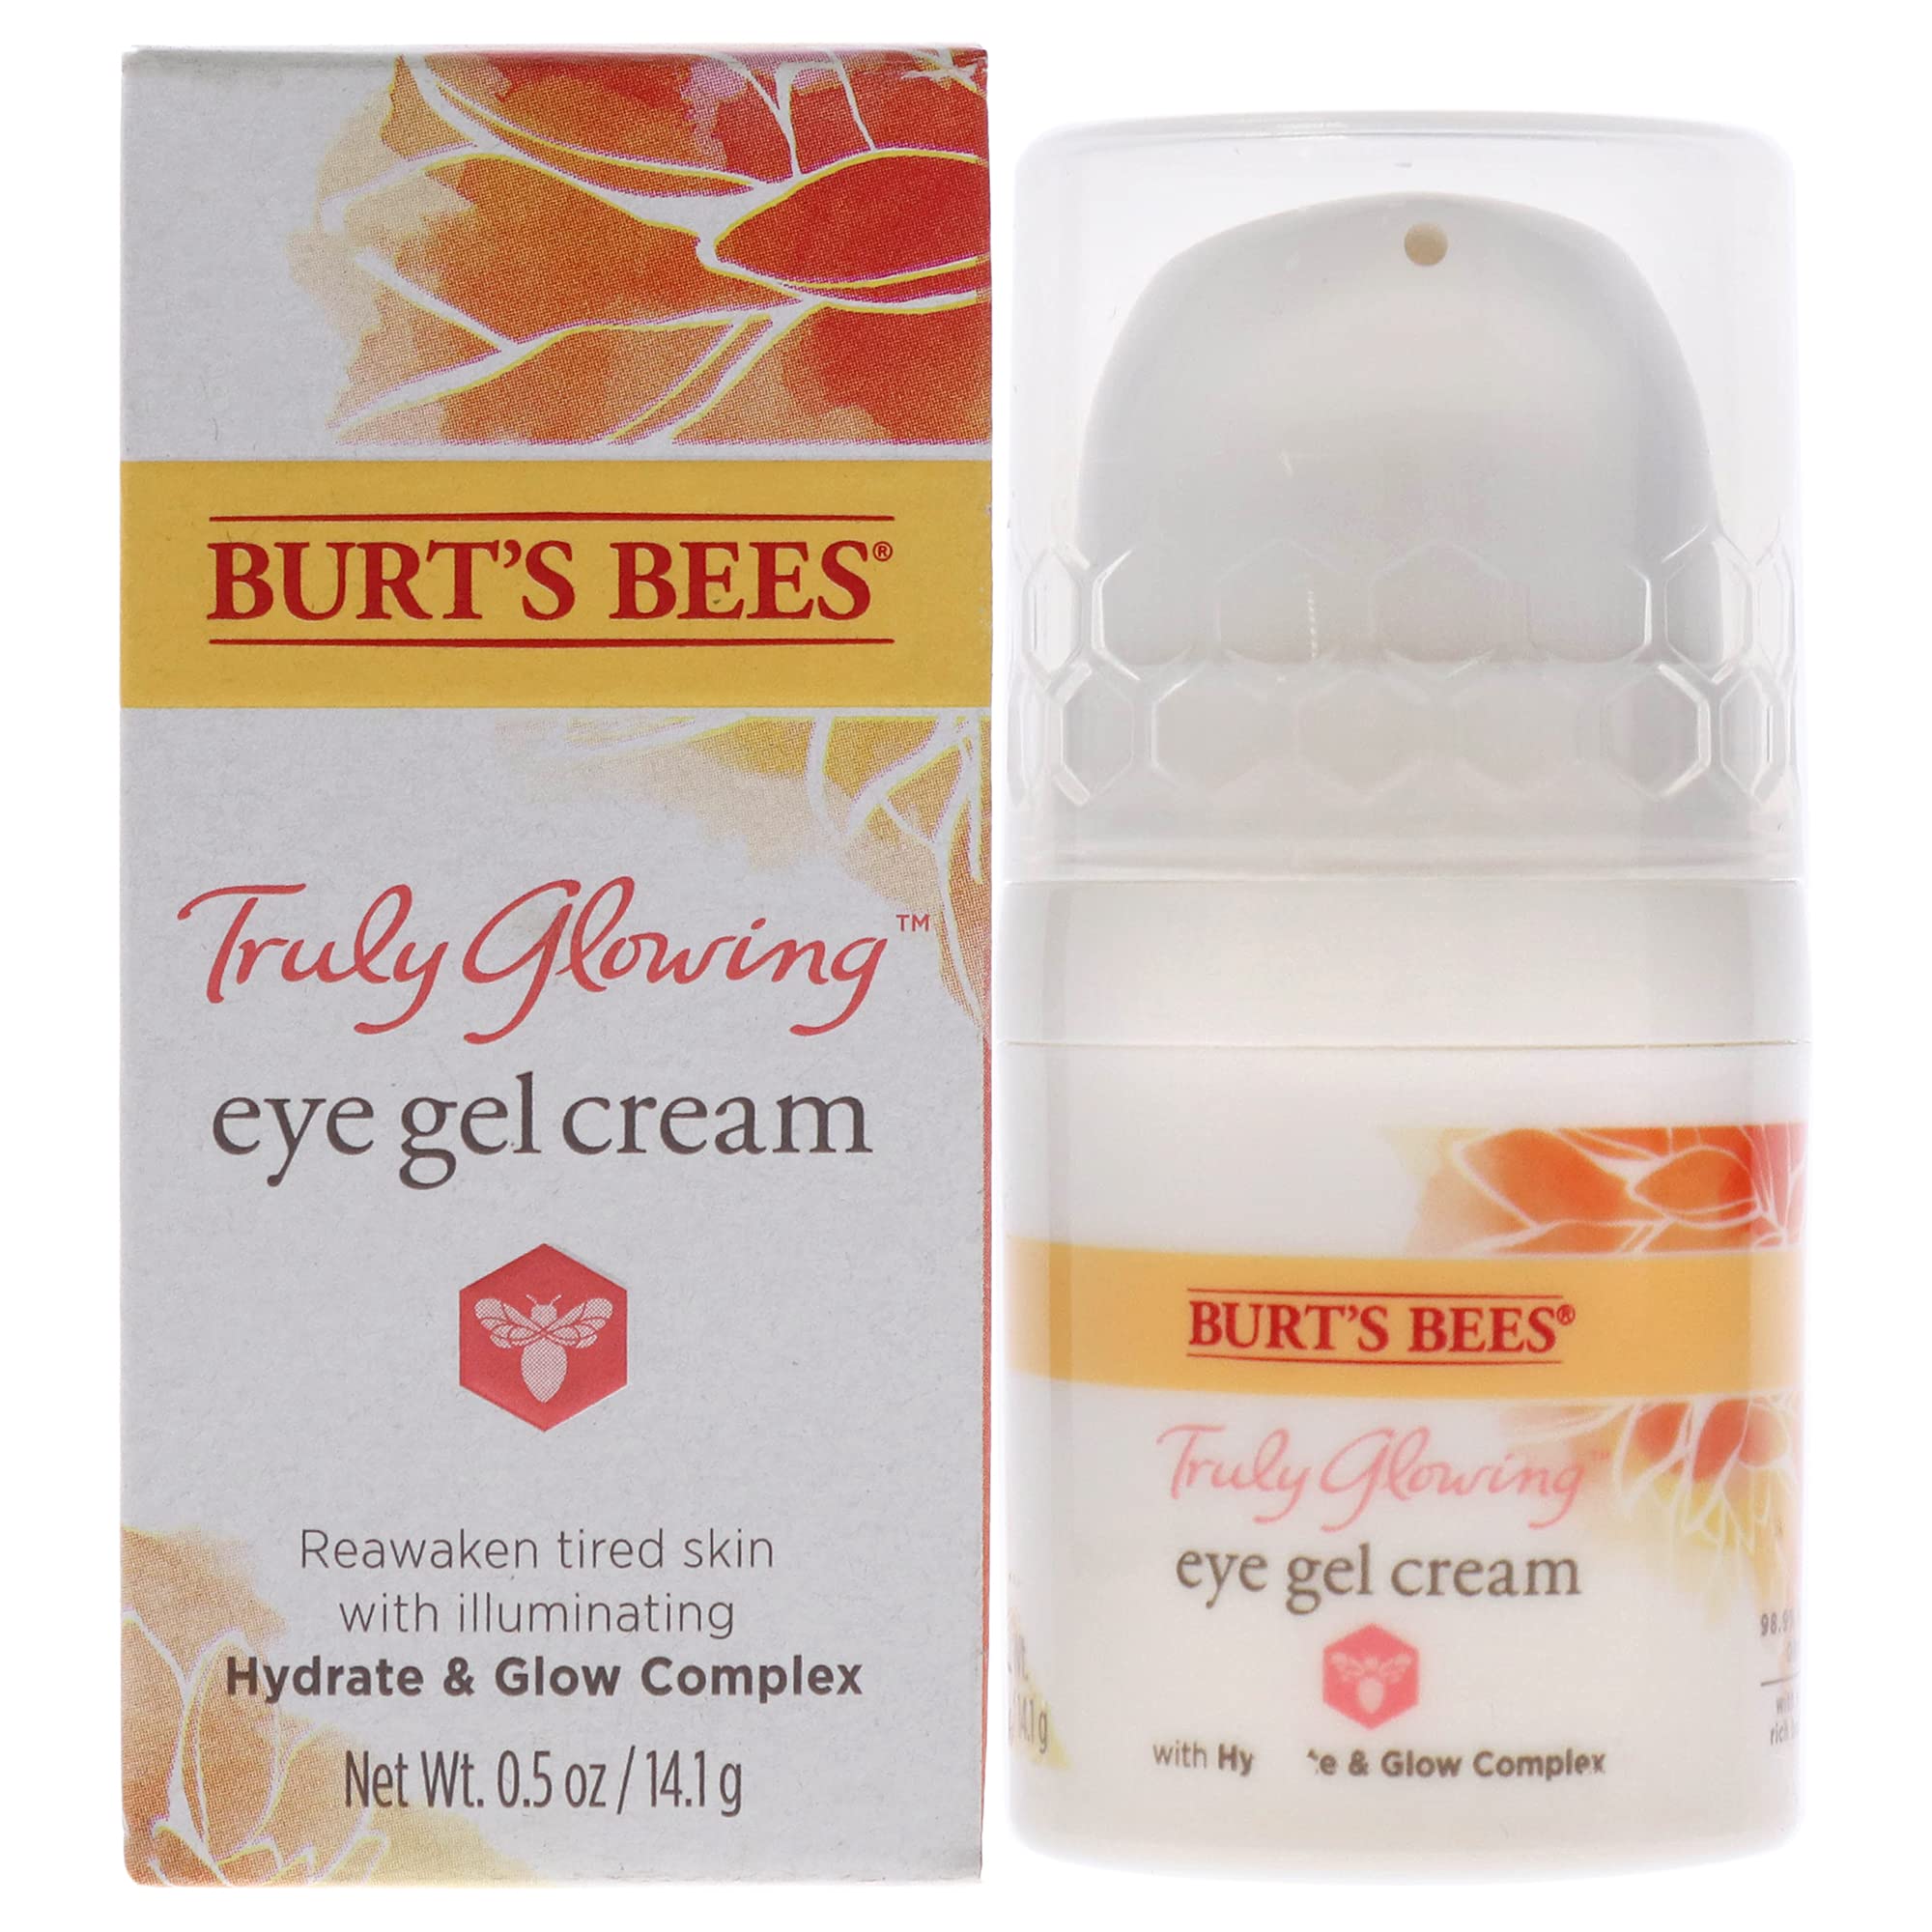 Burts Bees Truly Glowing Eye Gel Cream for Unisex 0.5 oz Cream